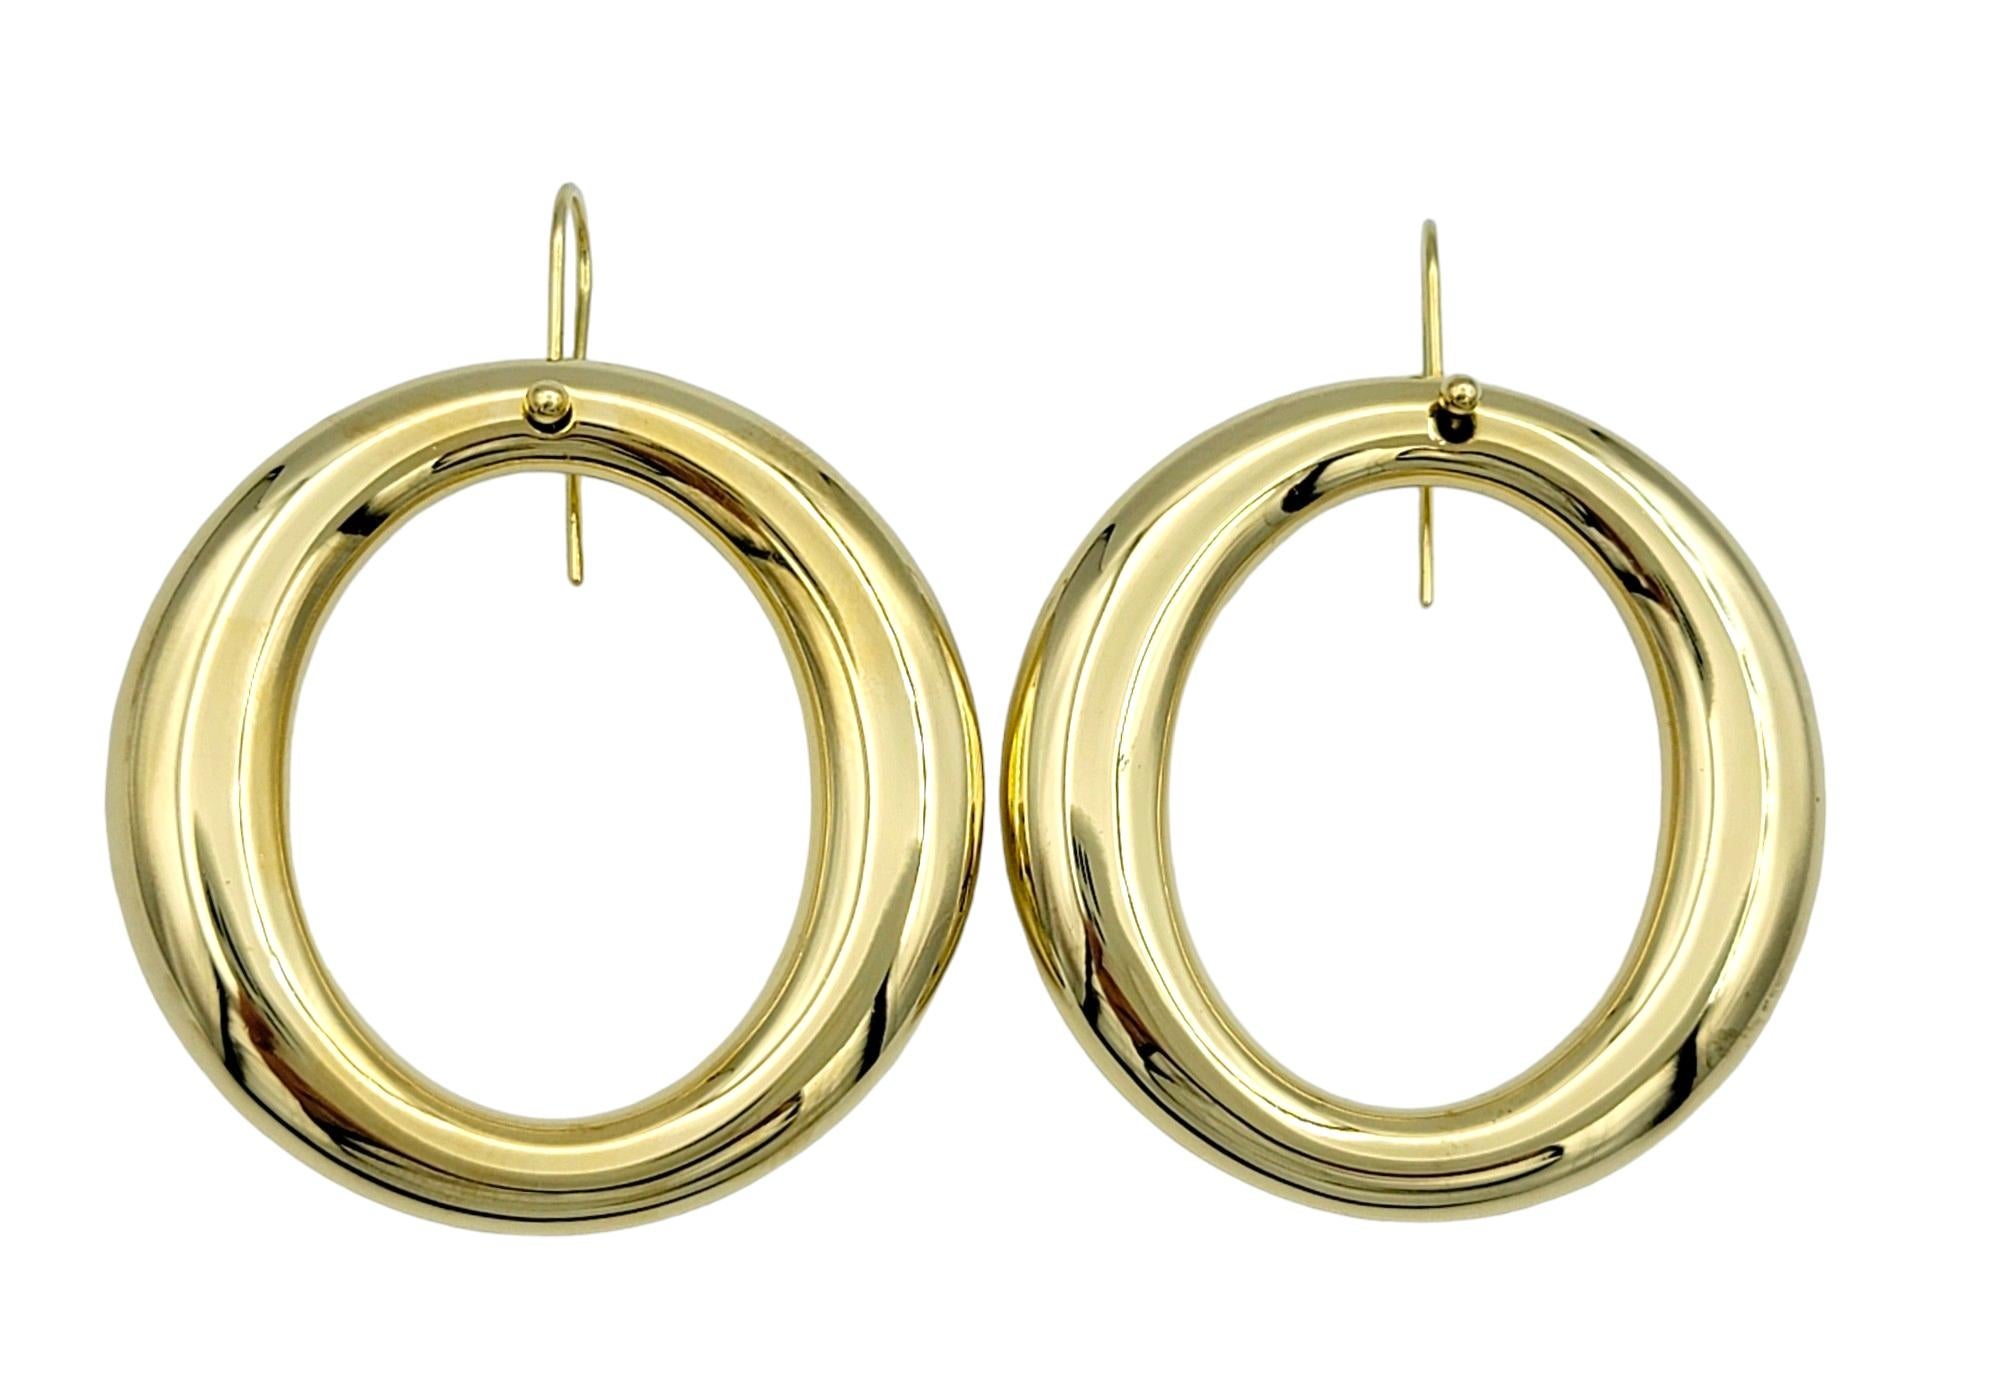 Diese eleganten Ohrringe aus der Kollektion Elsa Peretti Sevillana von Tiffany & Co. haben ein zeitloses, offenes Kreisdesign und sind in glänzendes 18 Karat Gelbgold gefasst. Die Schlichtheit des Designs wird durch den Luxus des Goldes aufgewertet,